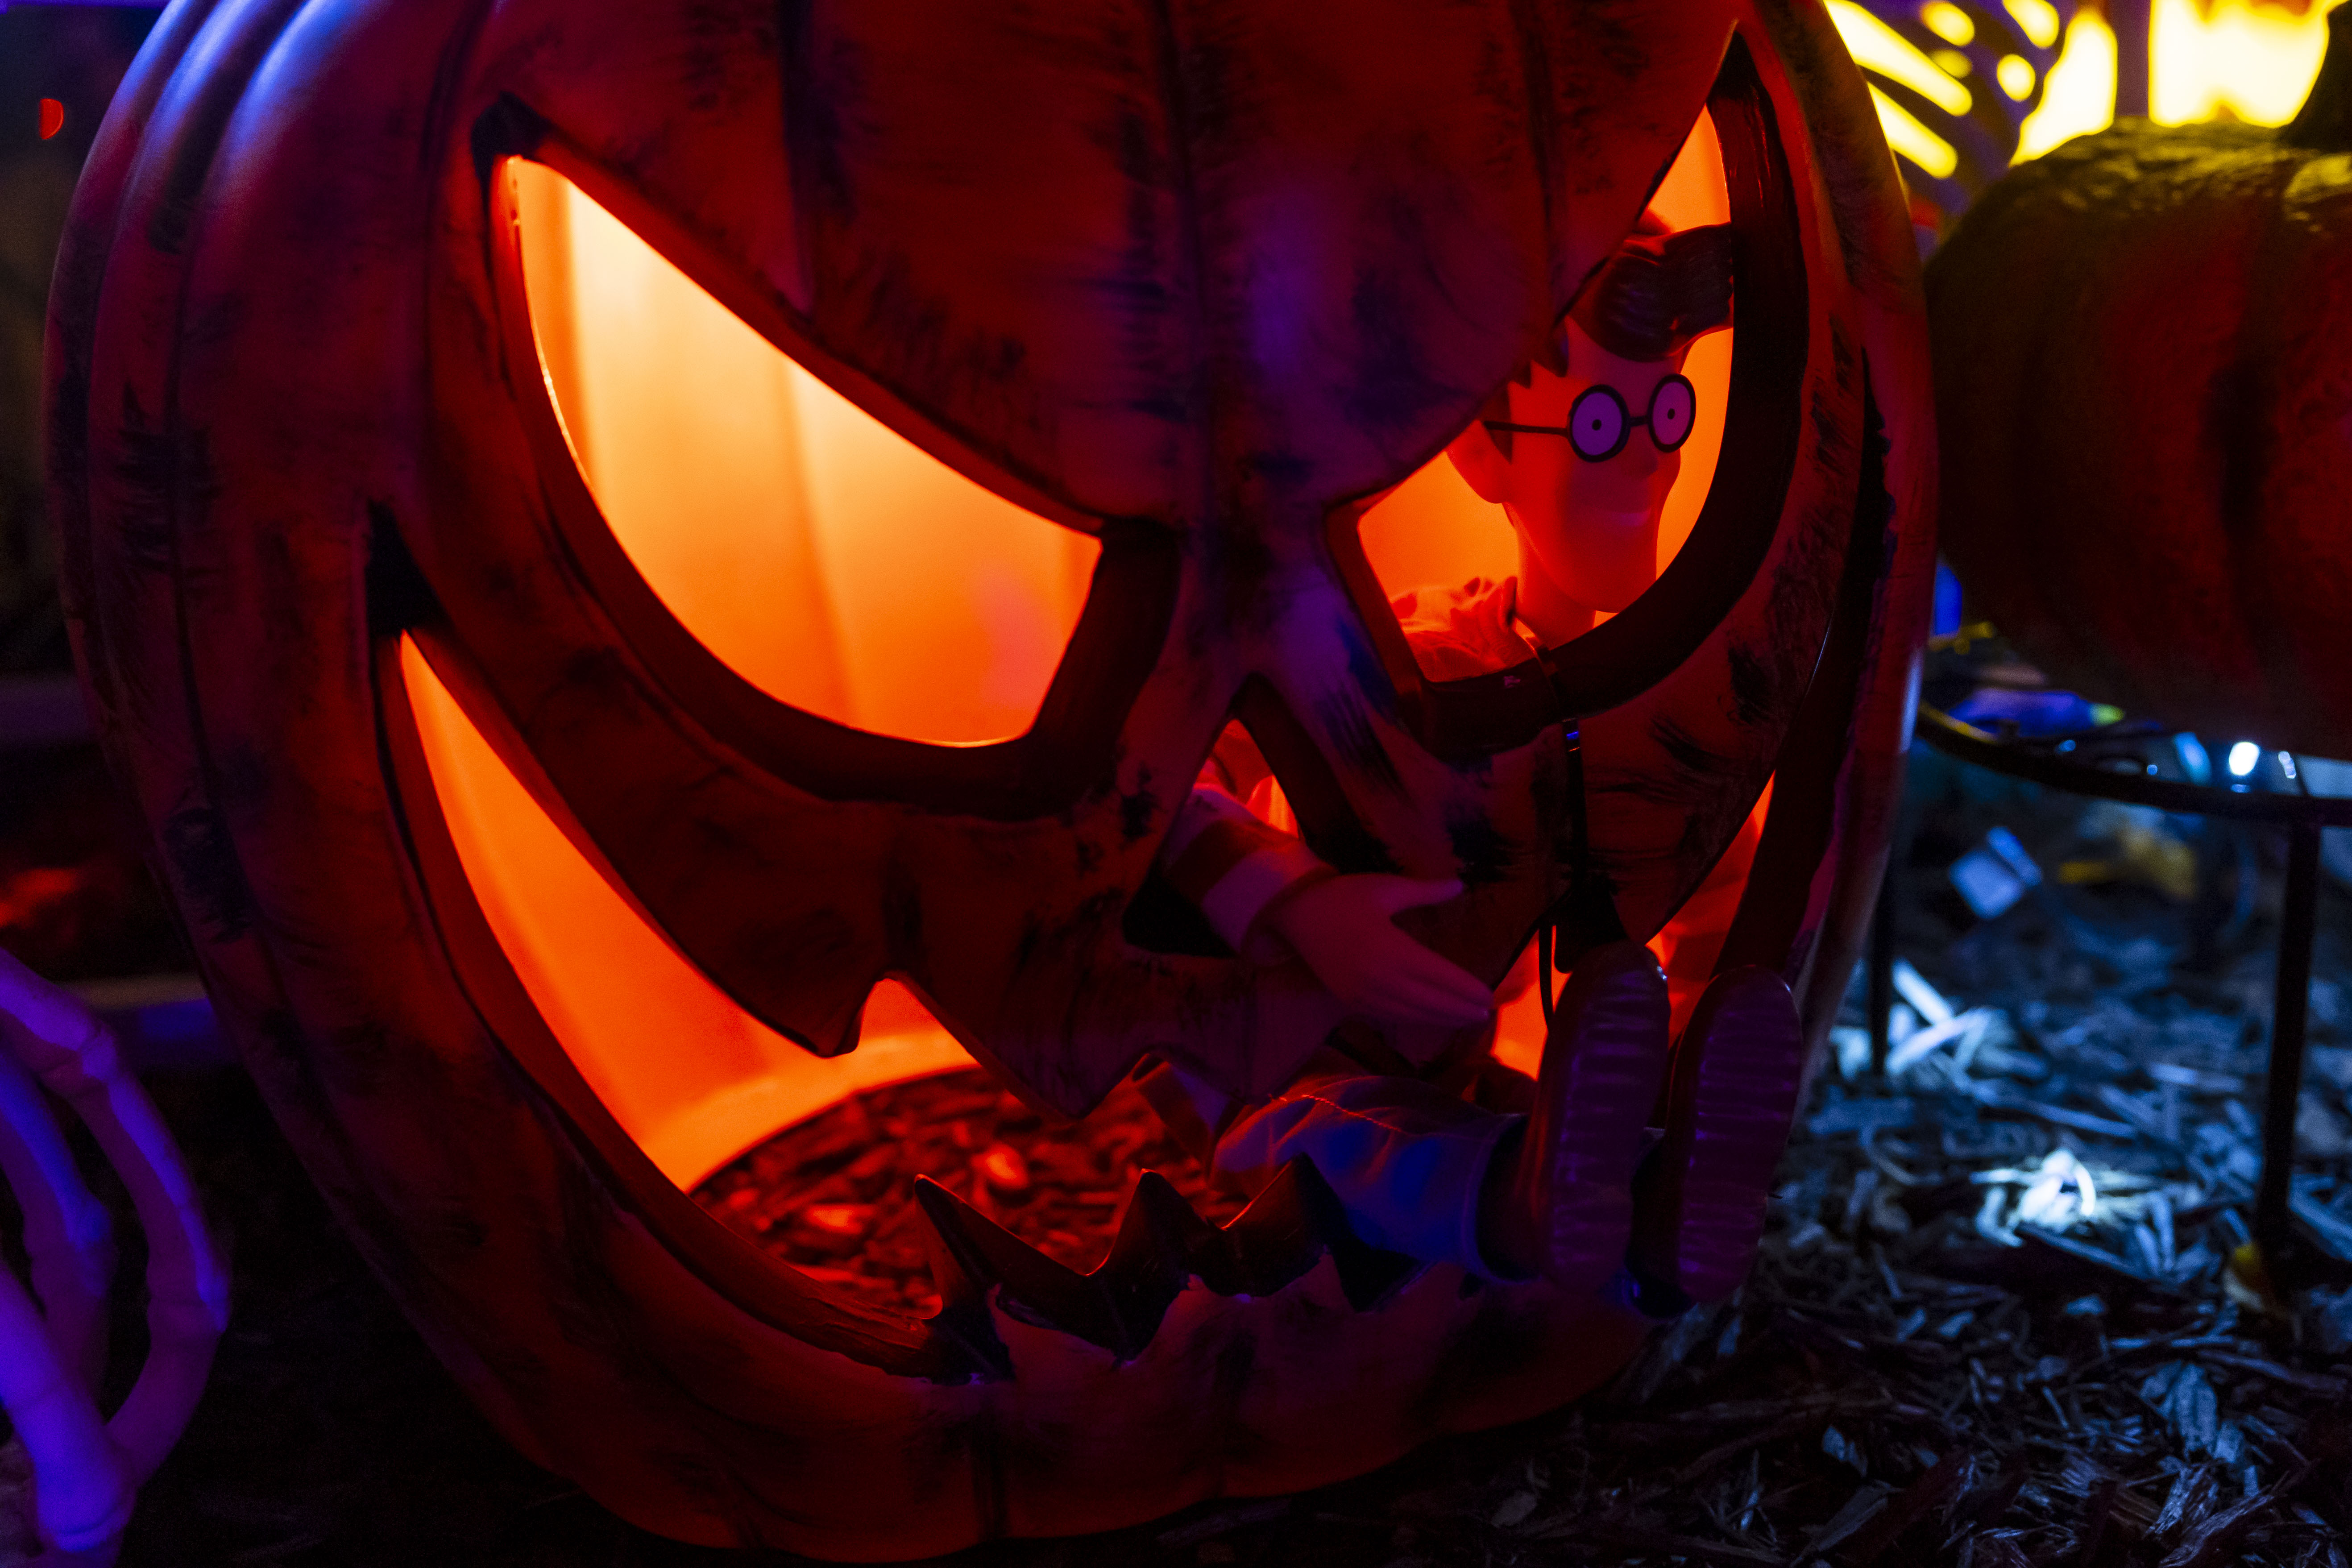 Ghost, Jack-o-lantern, Halloween, Boo! Scary Pumpkin Monster Fire Face  T-Shirt | Kids T-Shirt